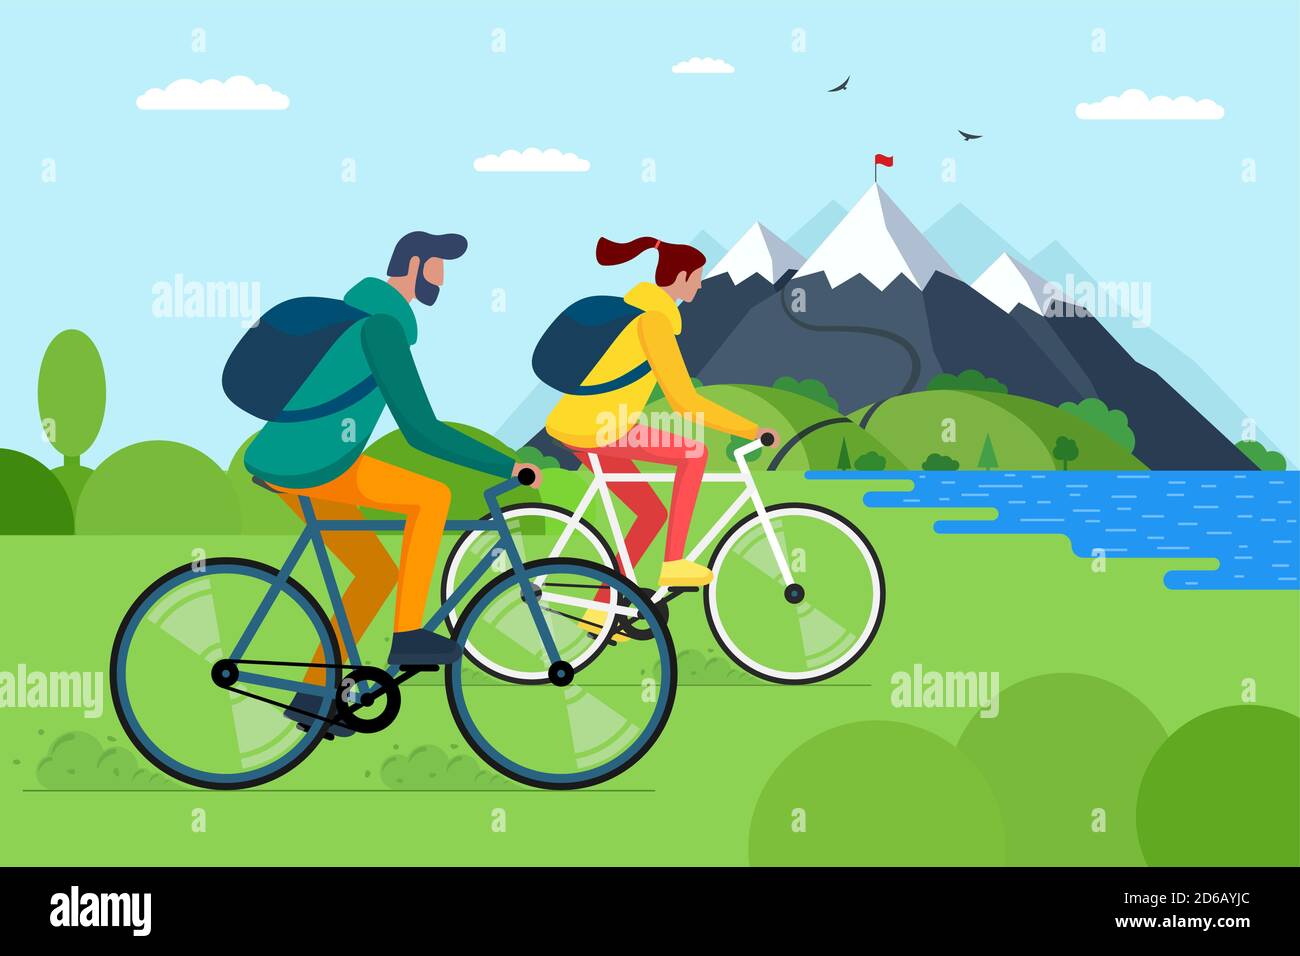 Junges Paar mit Fahrrädern in den Bergen. Junge und Mädchen Radfahrer mit Rucksäcken auf Fahrräder reisen in der Natur. Männliche und weibliche Radfahrer aktive Erholung auf Hügel See und Wald Vektor eps Illustration Stock Vektor